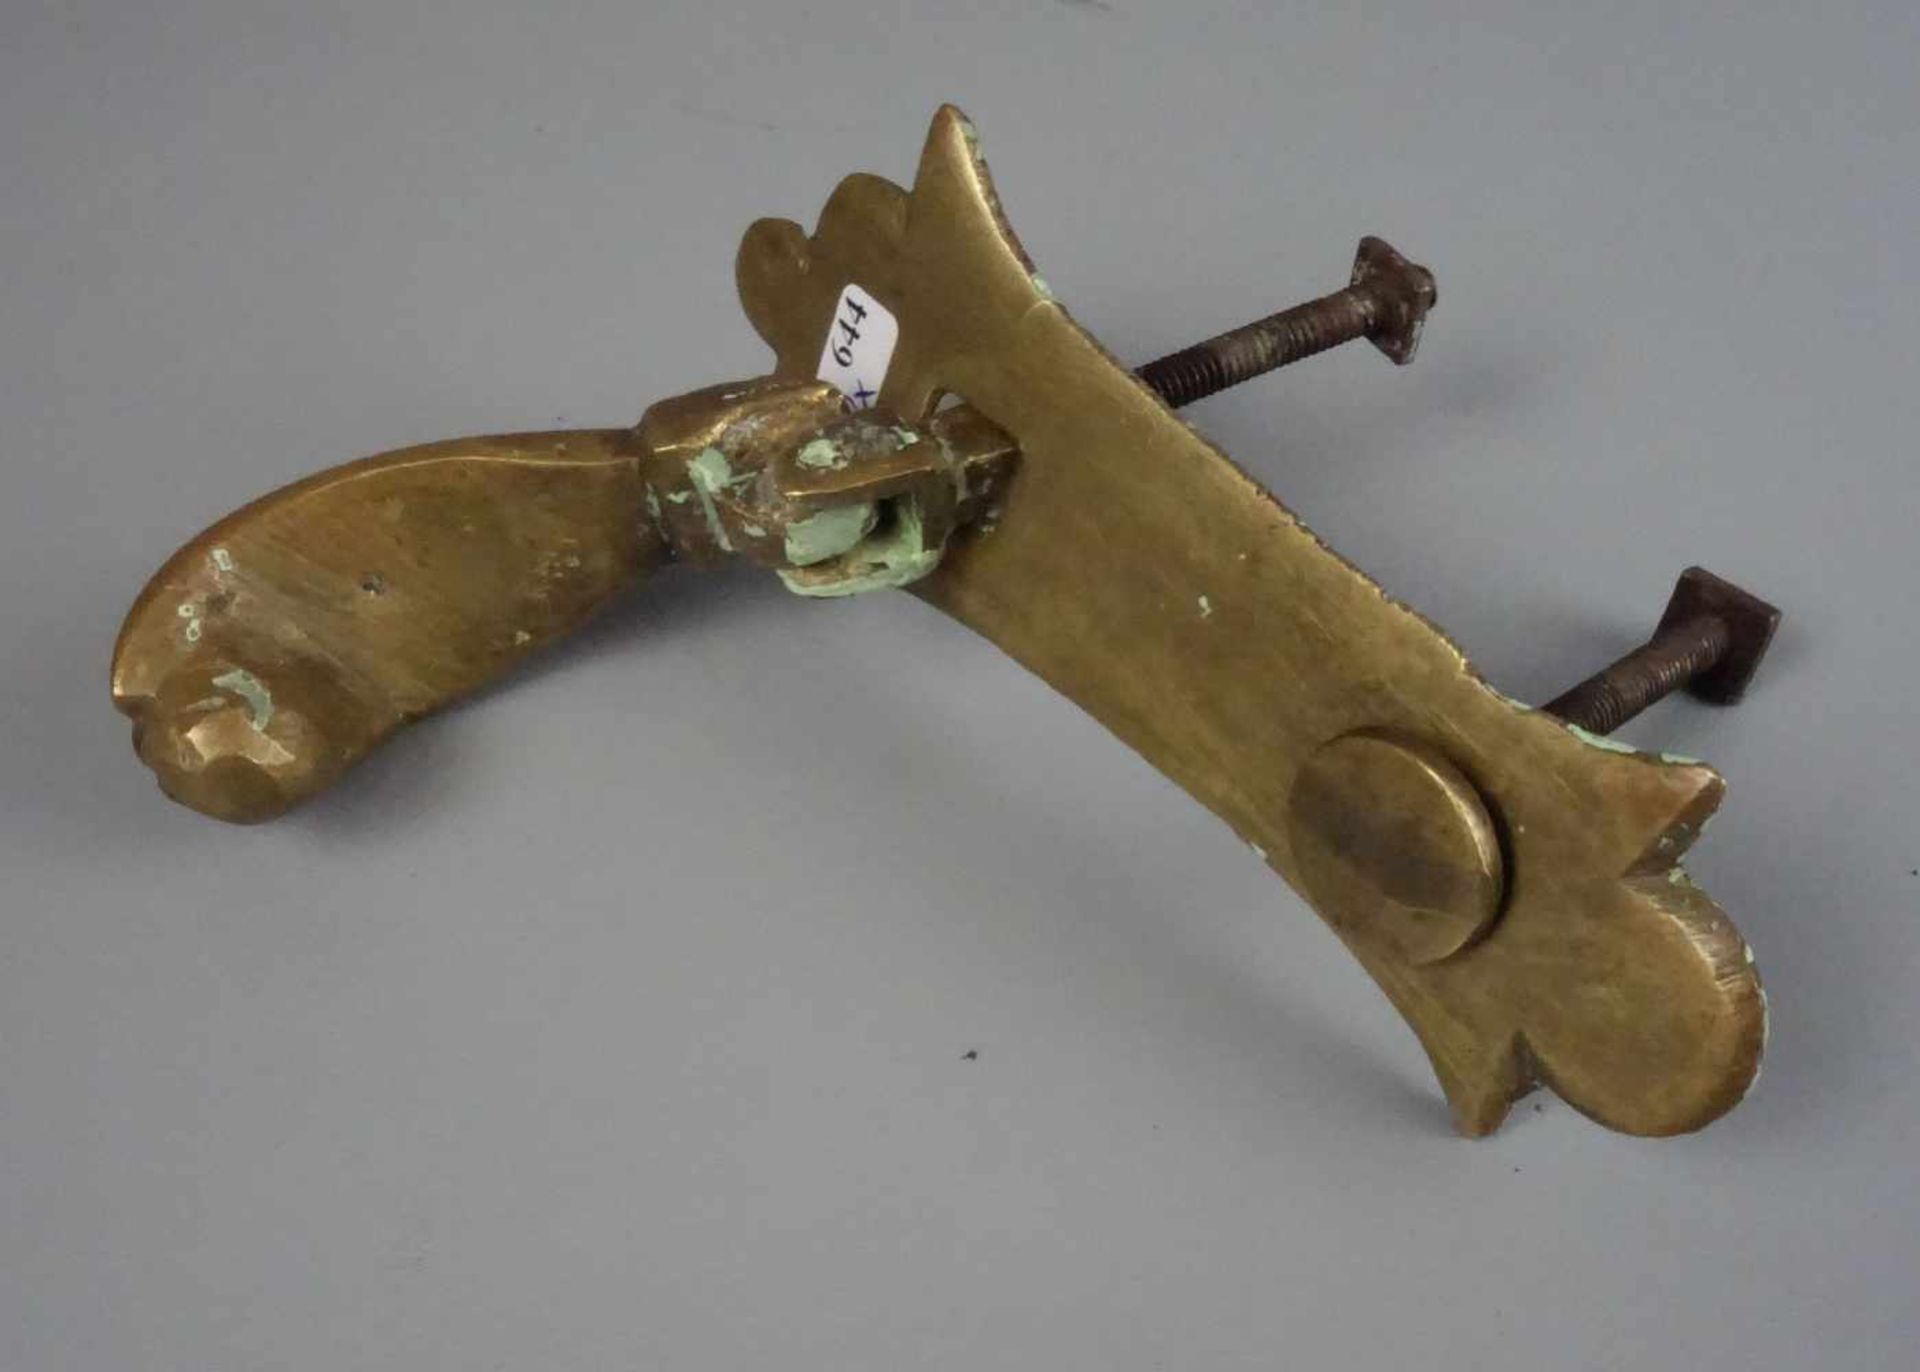 FIGÜRLICHER TÜRKLOPFER "HAND" UND TÜRDRÜCKER, Bronze-Gelbguss, jeweils mit heraldischen Schildern - Bild 2 aus 2